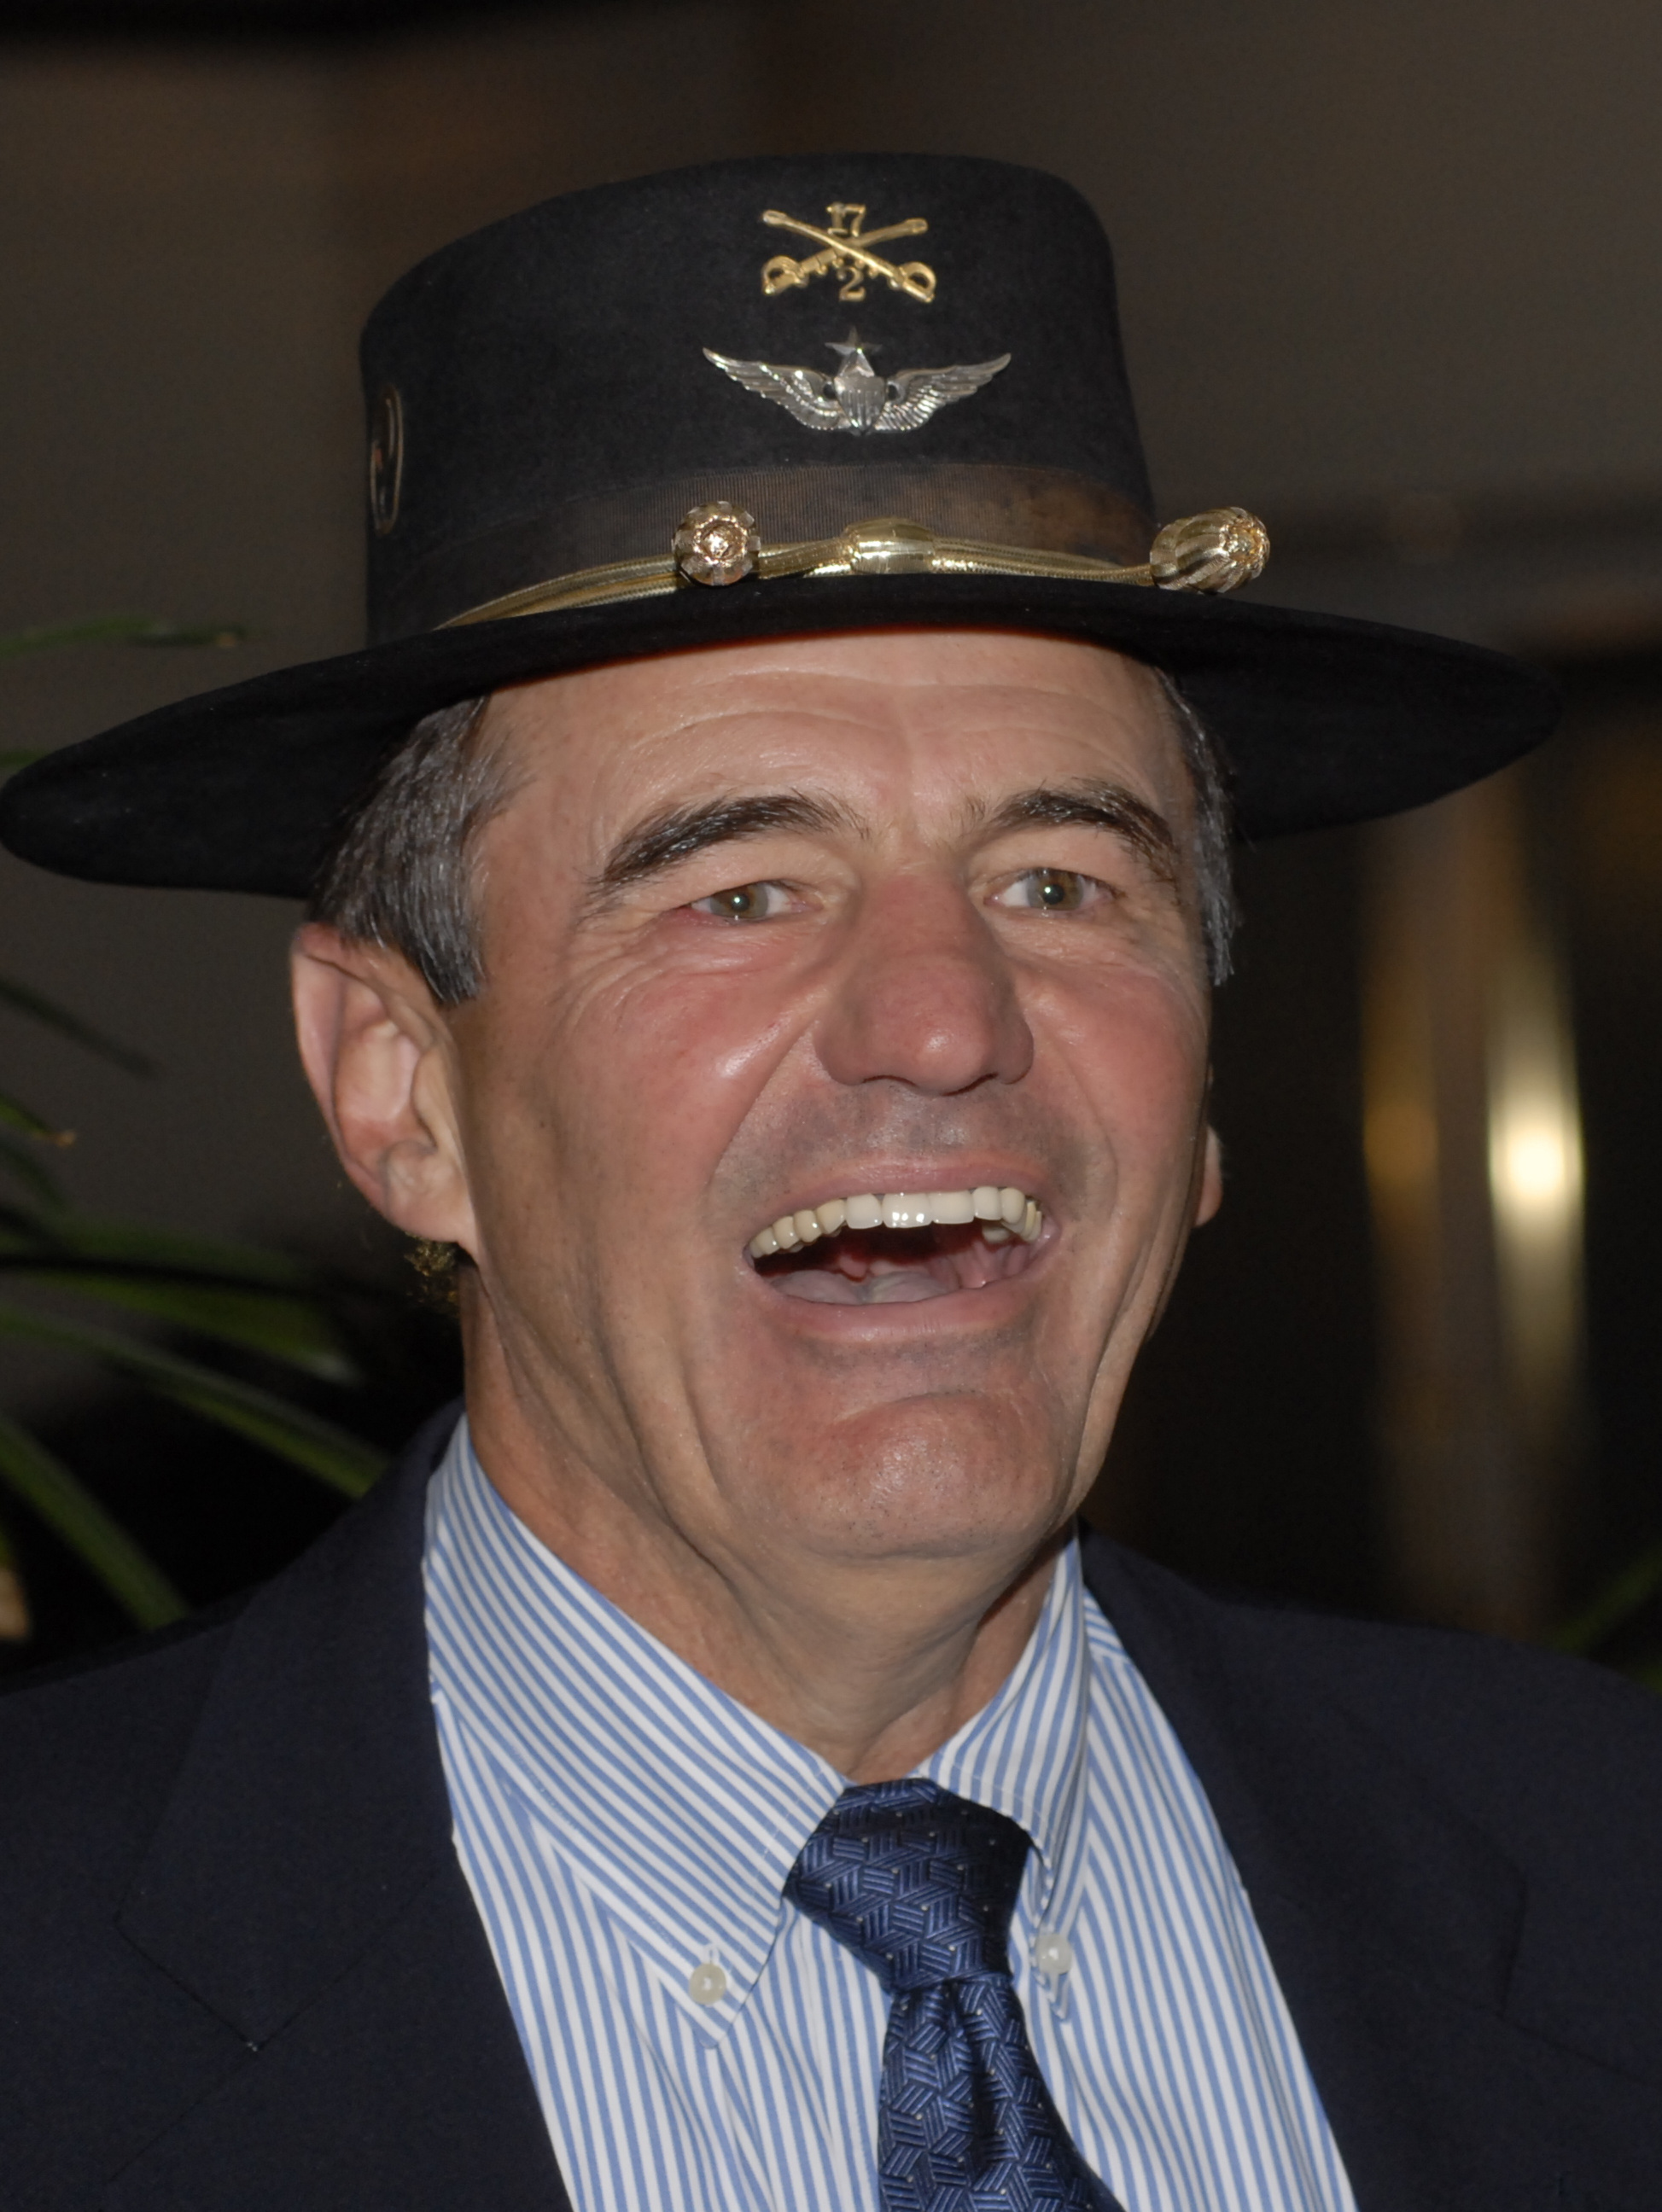 Chuck Vehlow in 2009, wearing the "Cav hat" he had in Vietnam